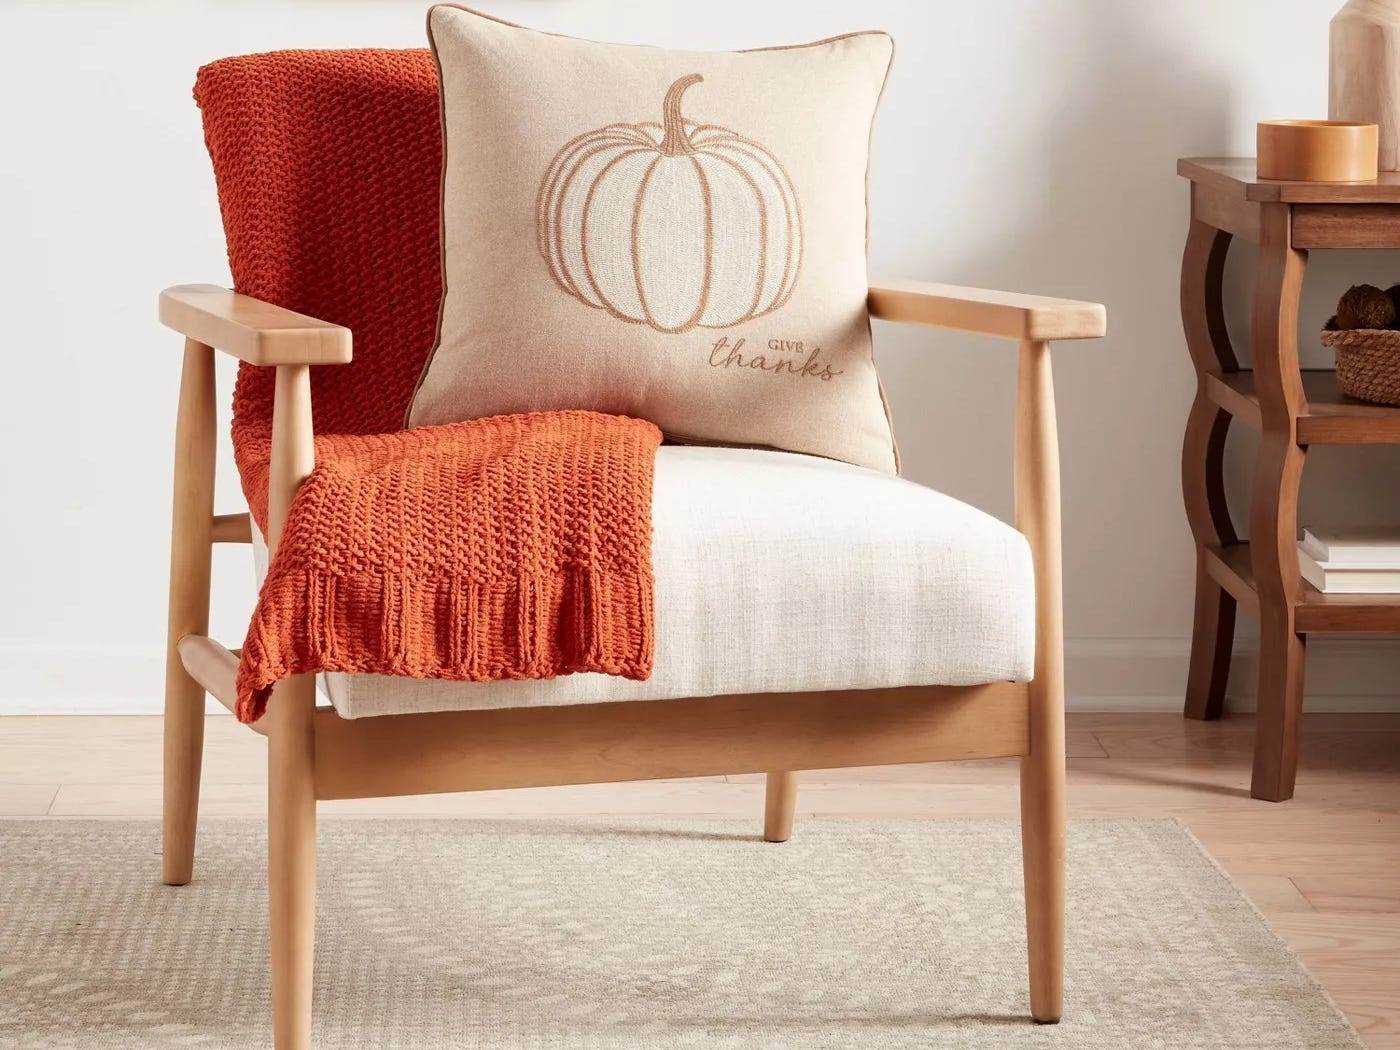 Bild eines Stuhls mit einem Kürbis-Wurfkissen und einer orangefarbenen Decke darauf von Target, dem süßesten Herbstdekor bei Target 2021